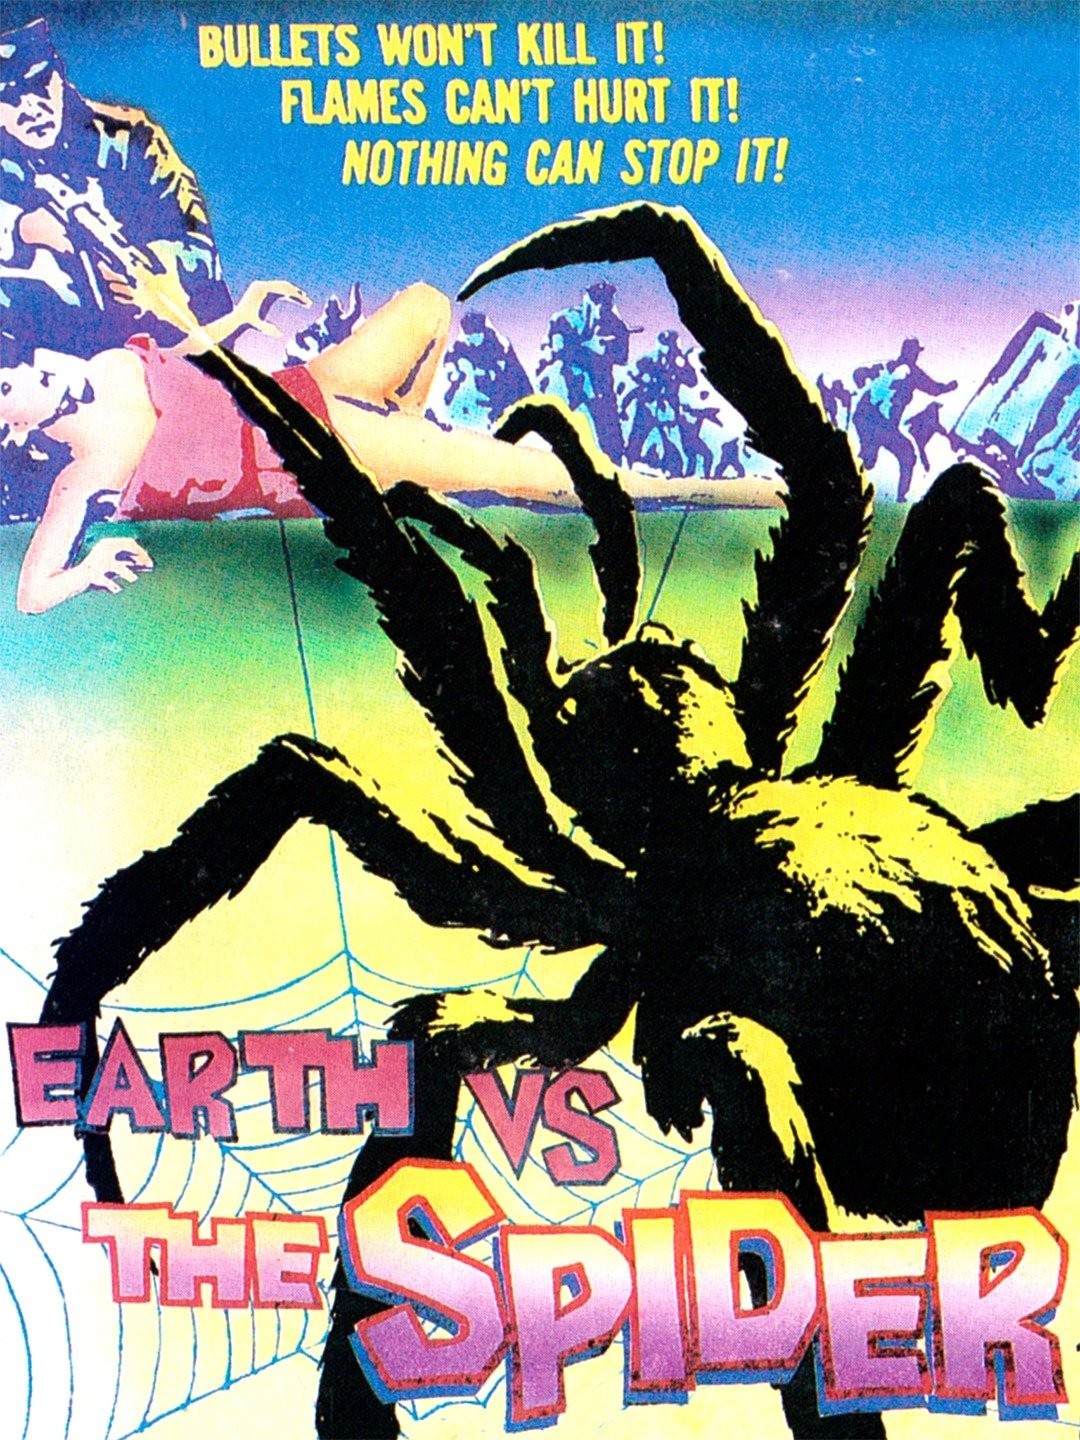 Earth vs. the Spider - Wikipedia